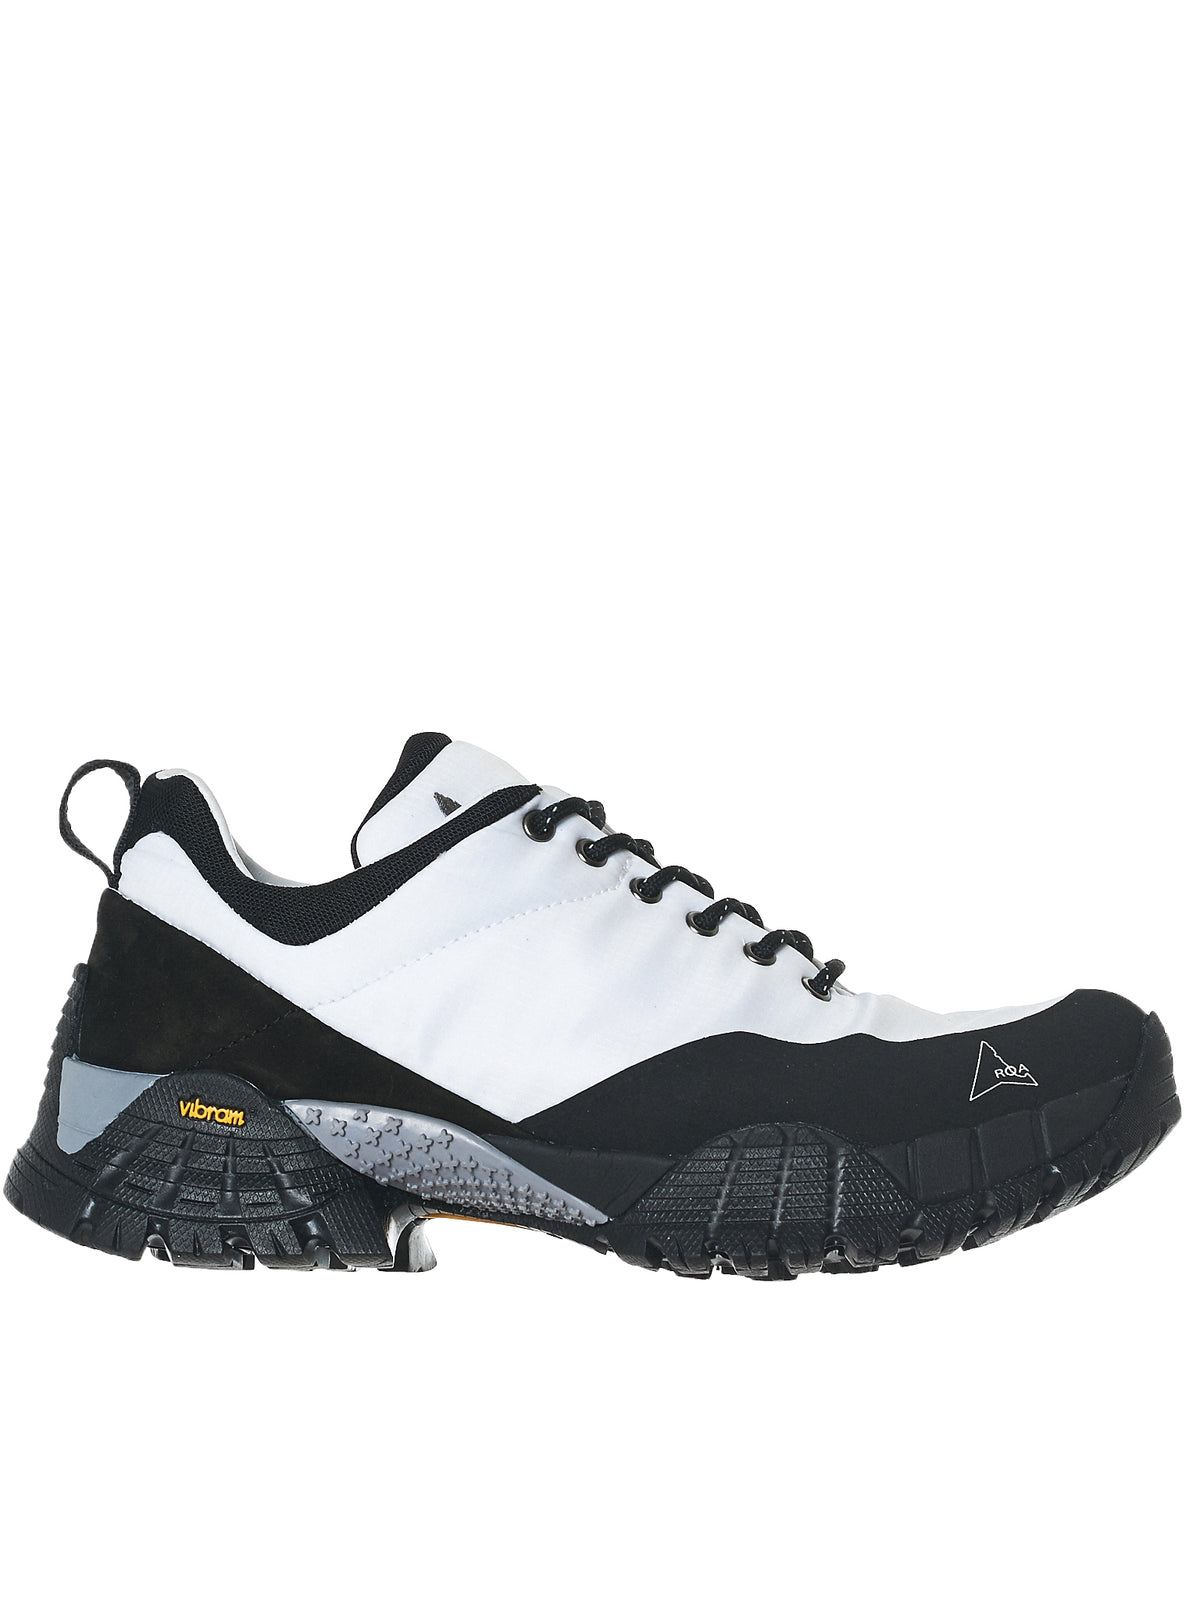 roa hiking sneakers